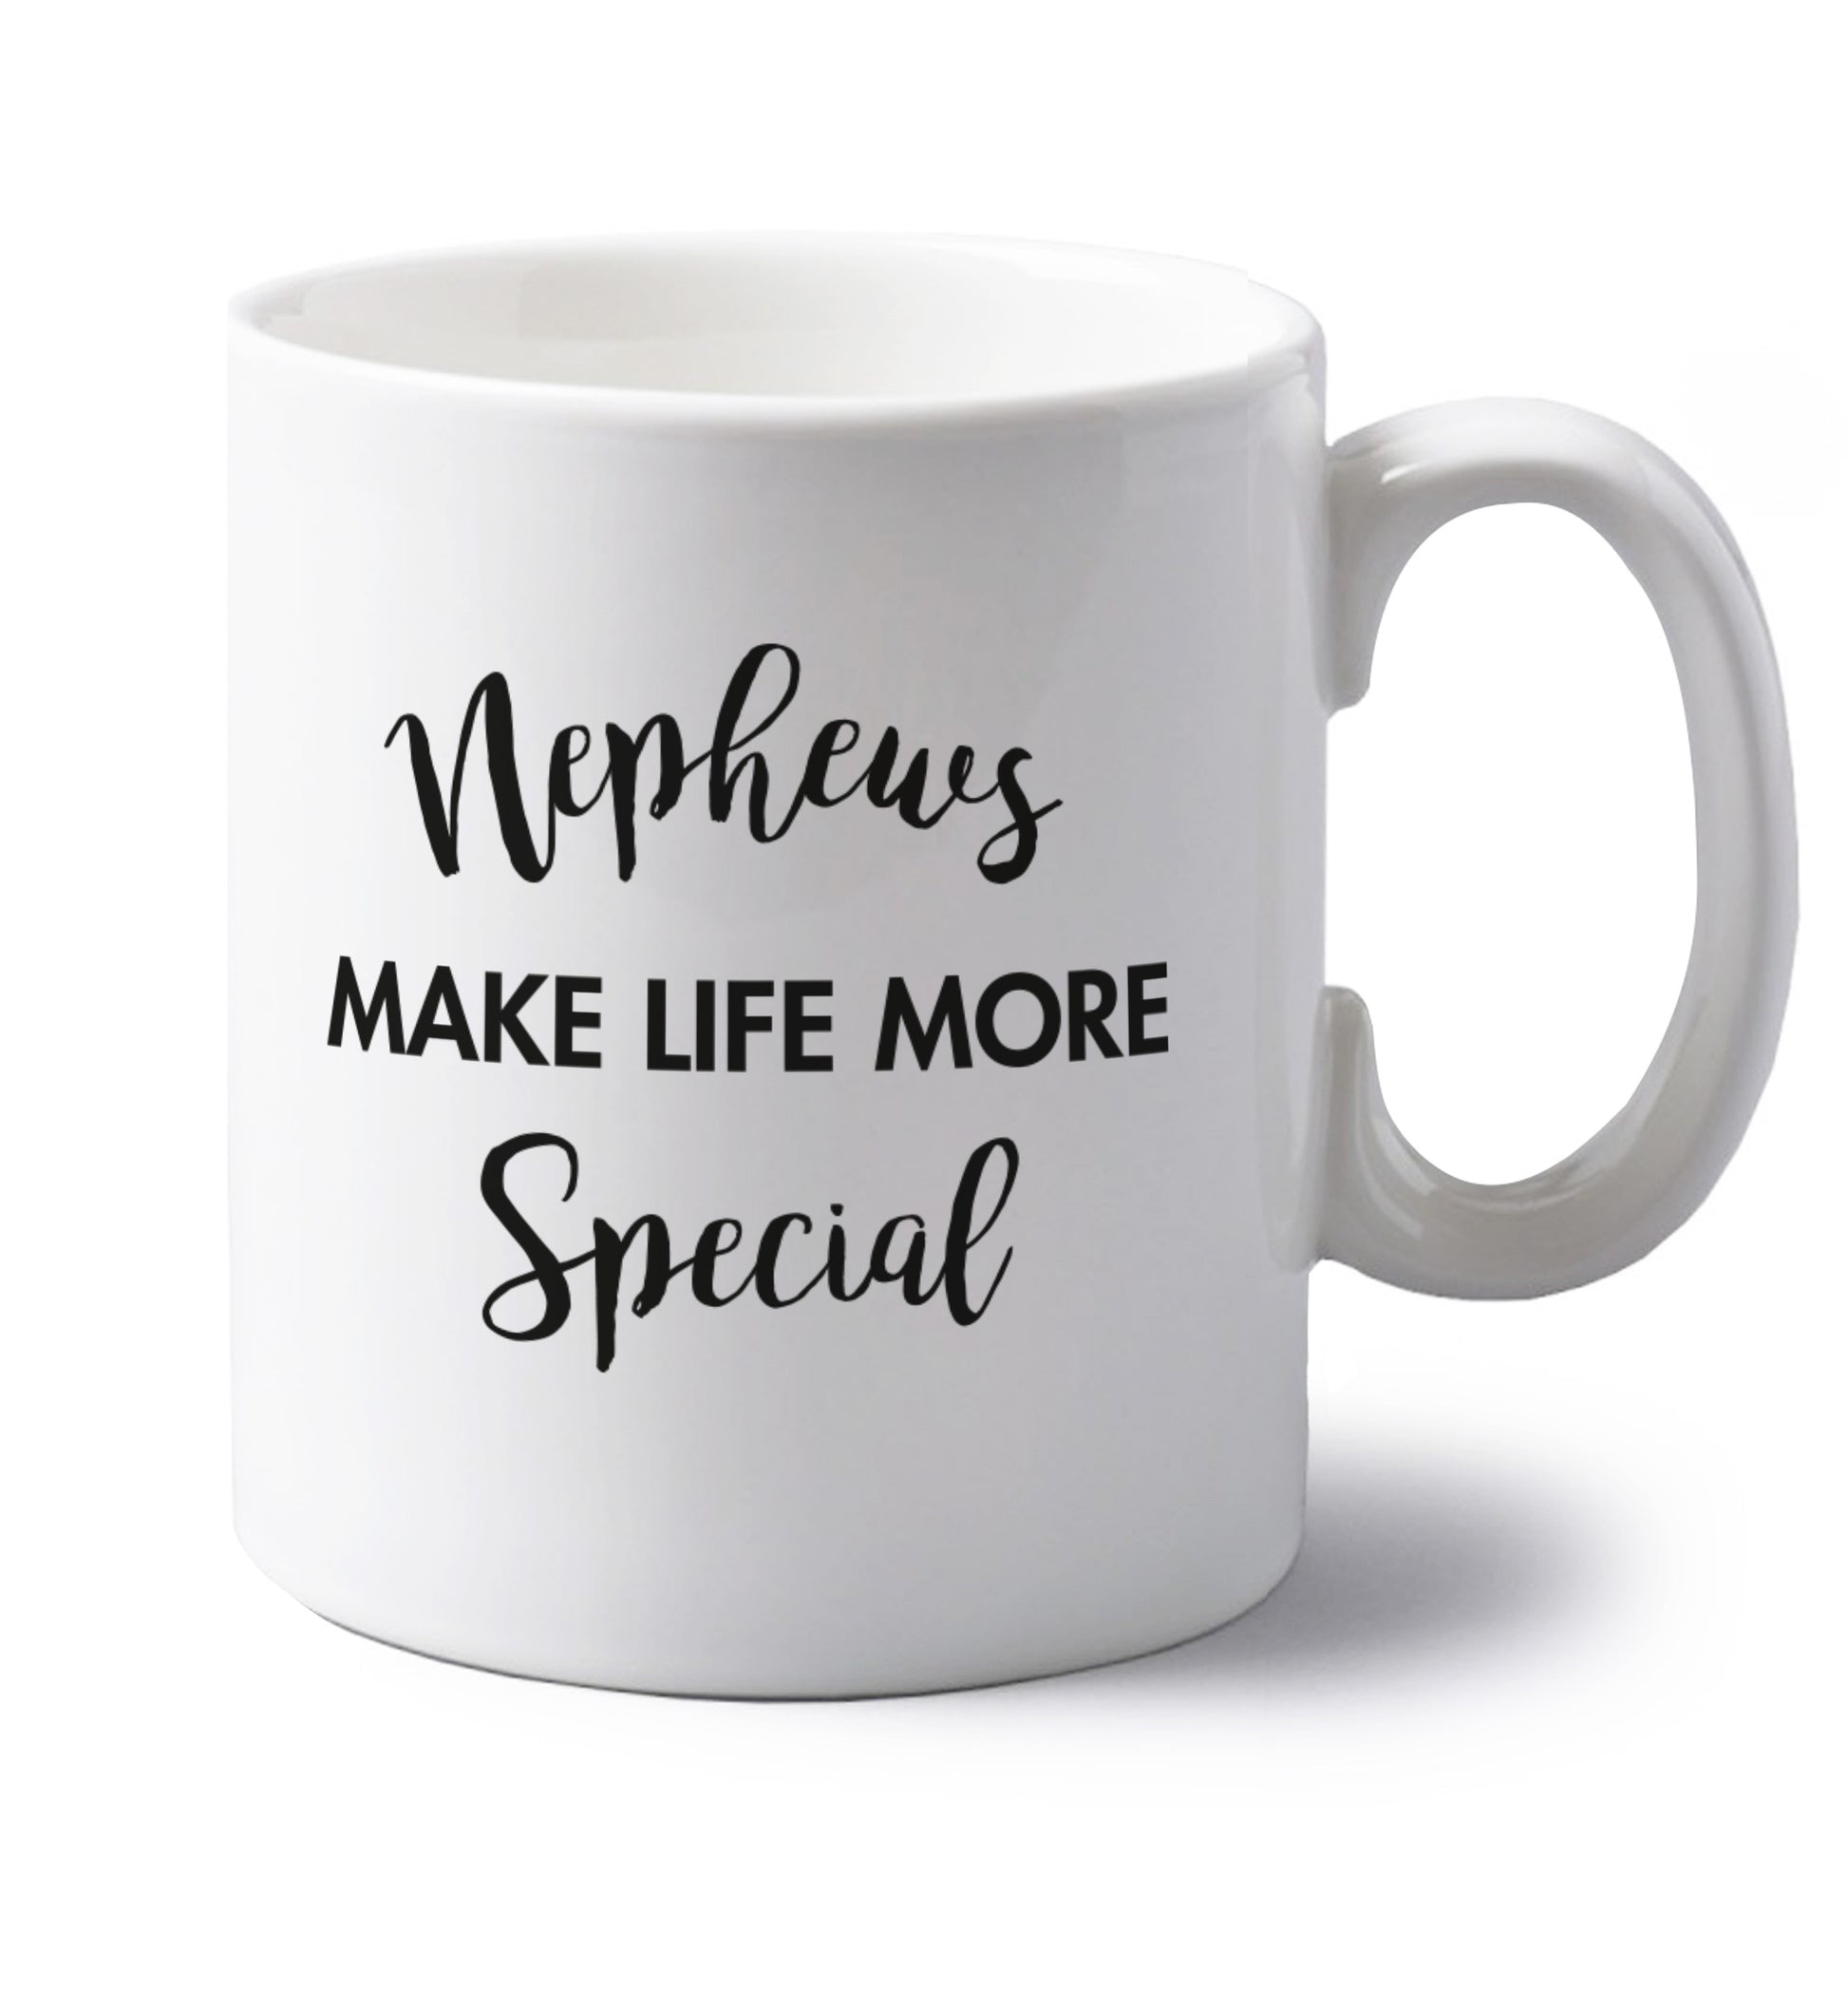 Nephews make life more special left handed white ceramic mug 